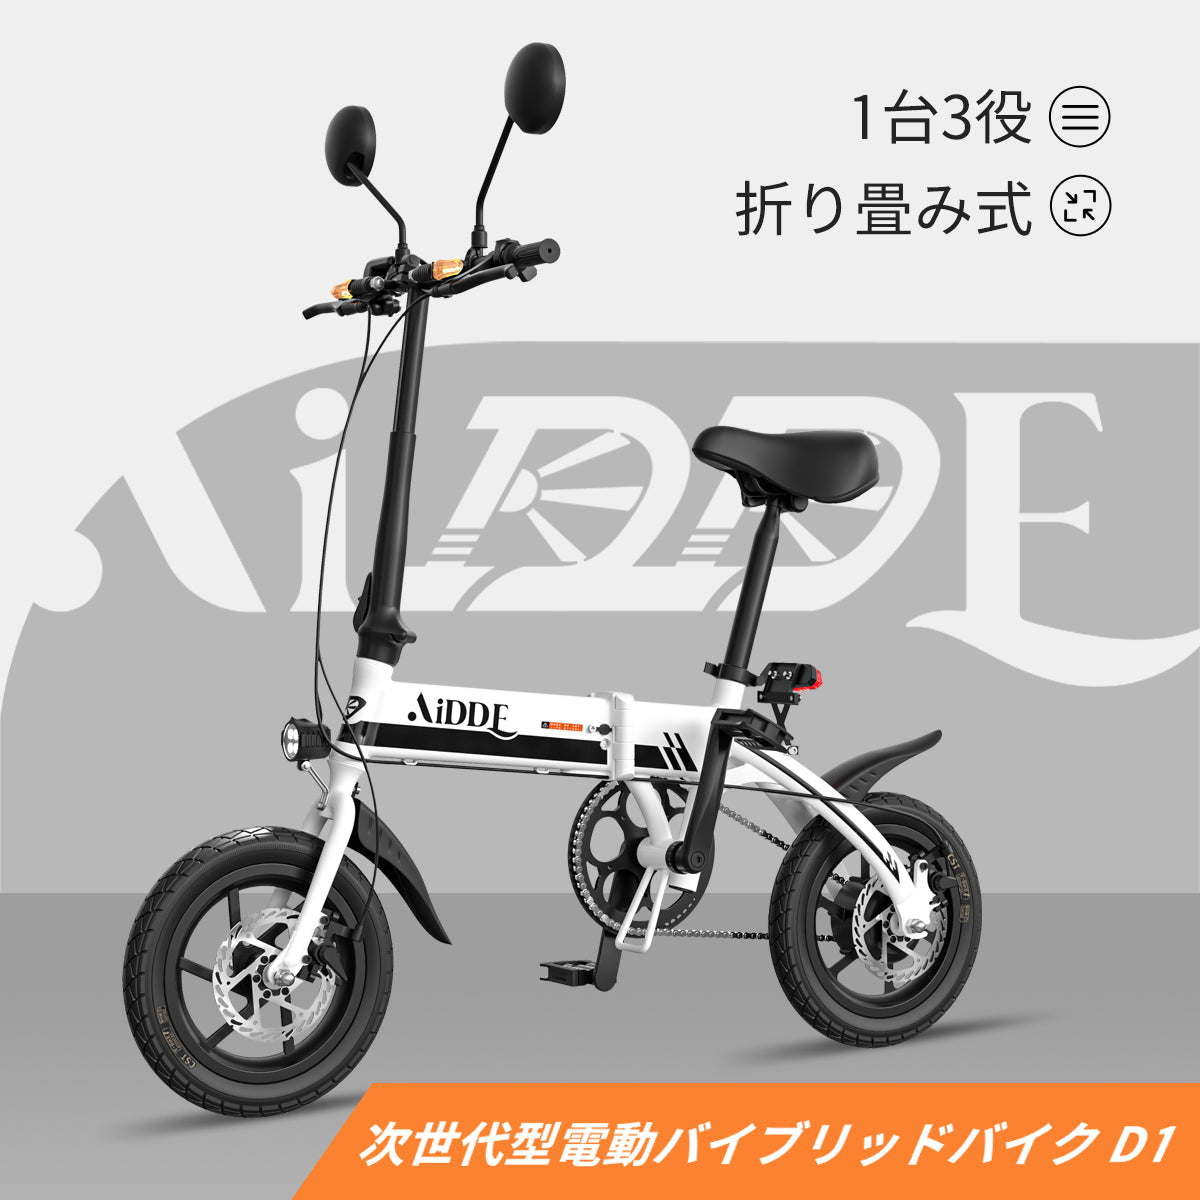 AiDDE 電動ハイブリッドバイク D1 次世代型